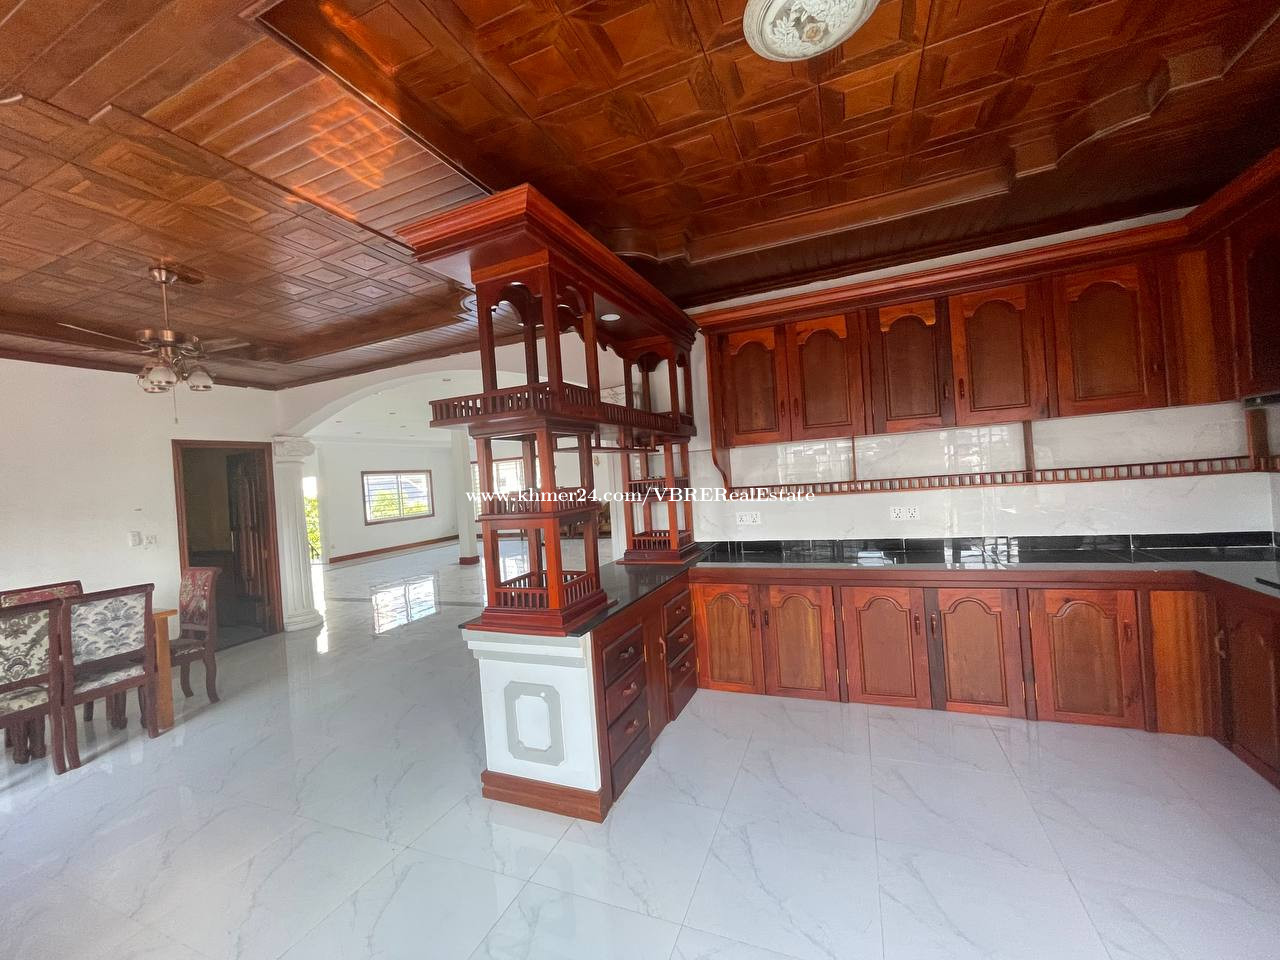 ផ្ទះវីឡាជួល ទីតាំងល្អផ្ទះស្អាតនៅសង្កាត់បឹងកក់២, Villa for Rent in Boeng Kak2,Property Code: VBRE00704